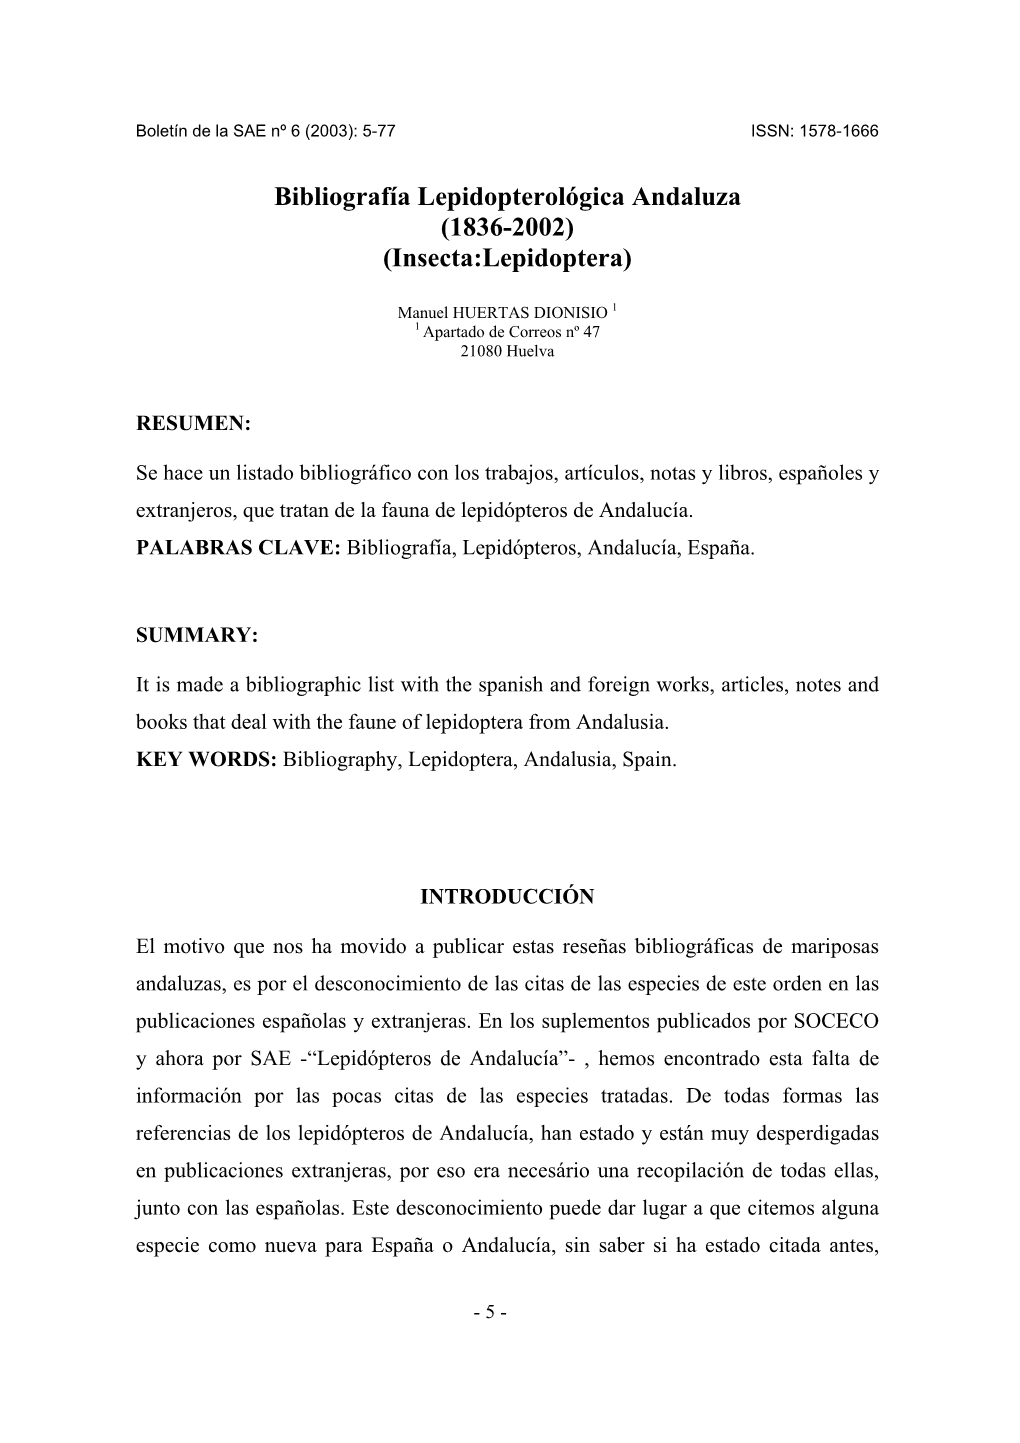 Bibliografía Lepidopterológica Andaluza (1836-2002) (Insecta:Lepidoptera)